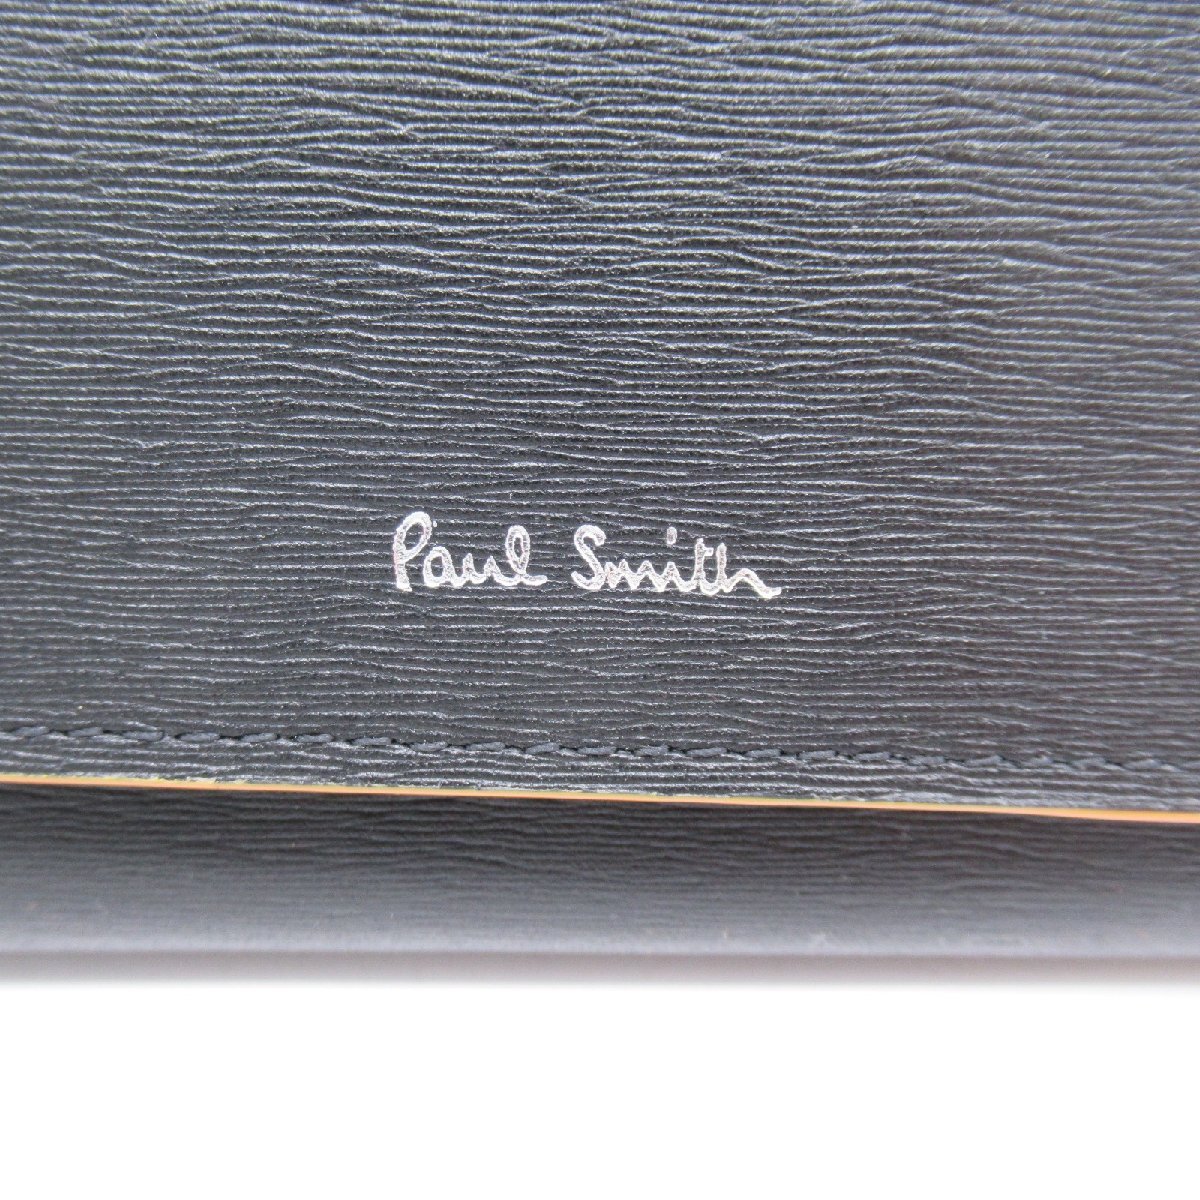 ポール・スミス 二つ折り長財布 ブランドオフ Paul Smith レザー 二つ折り長財布 レザー メンズ レディース_画像6